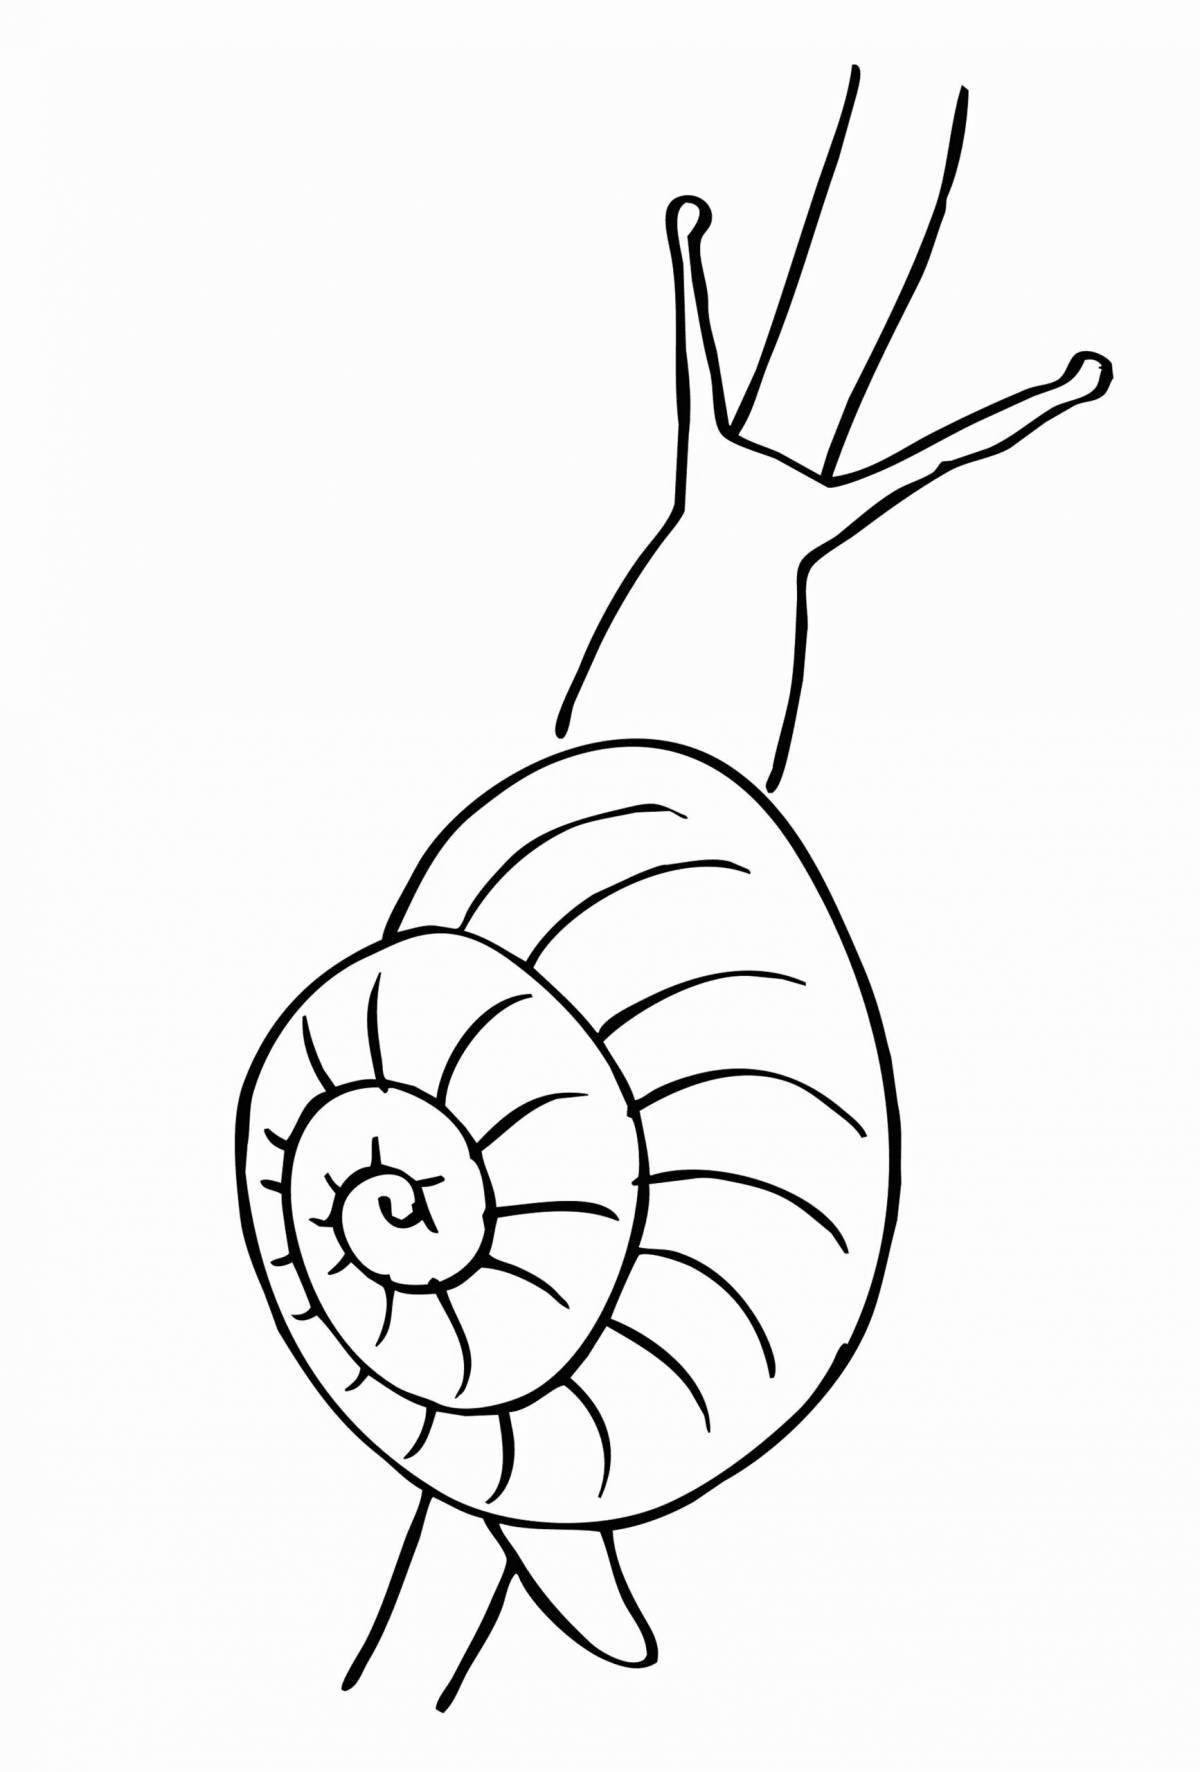 Joyful snail drawing for kids